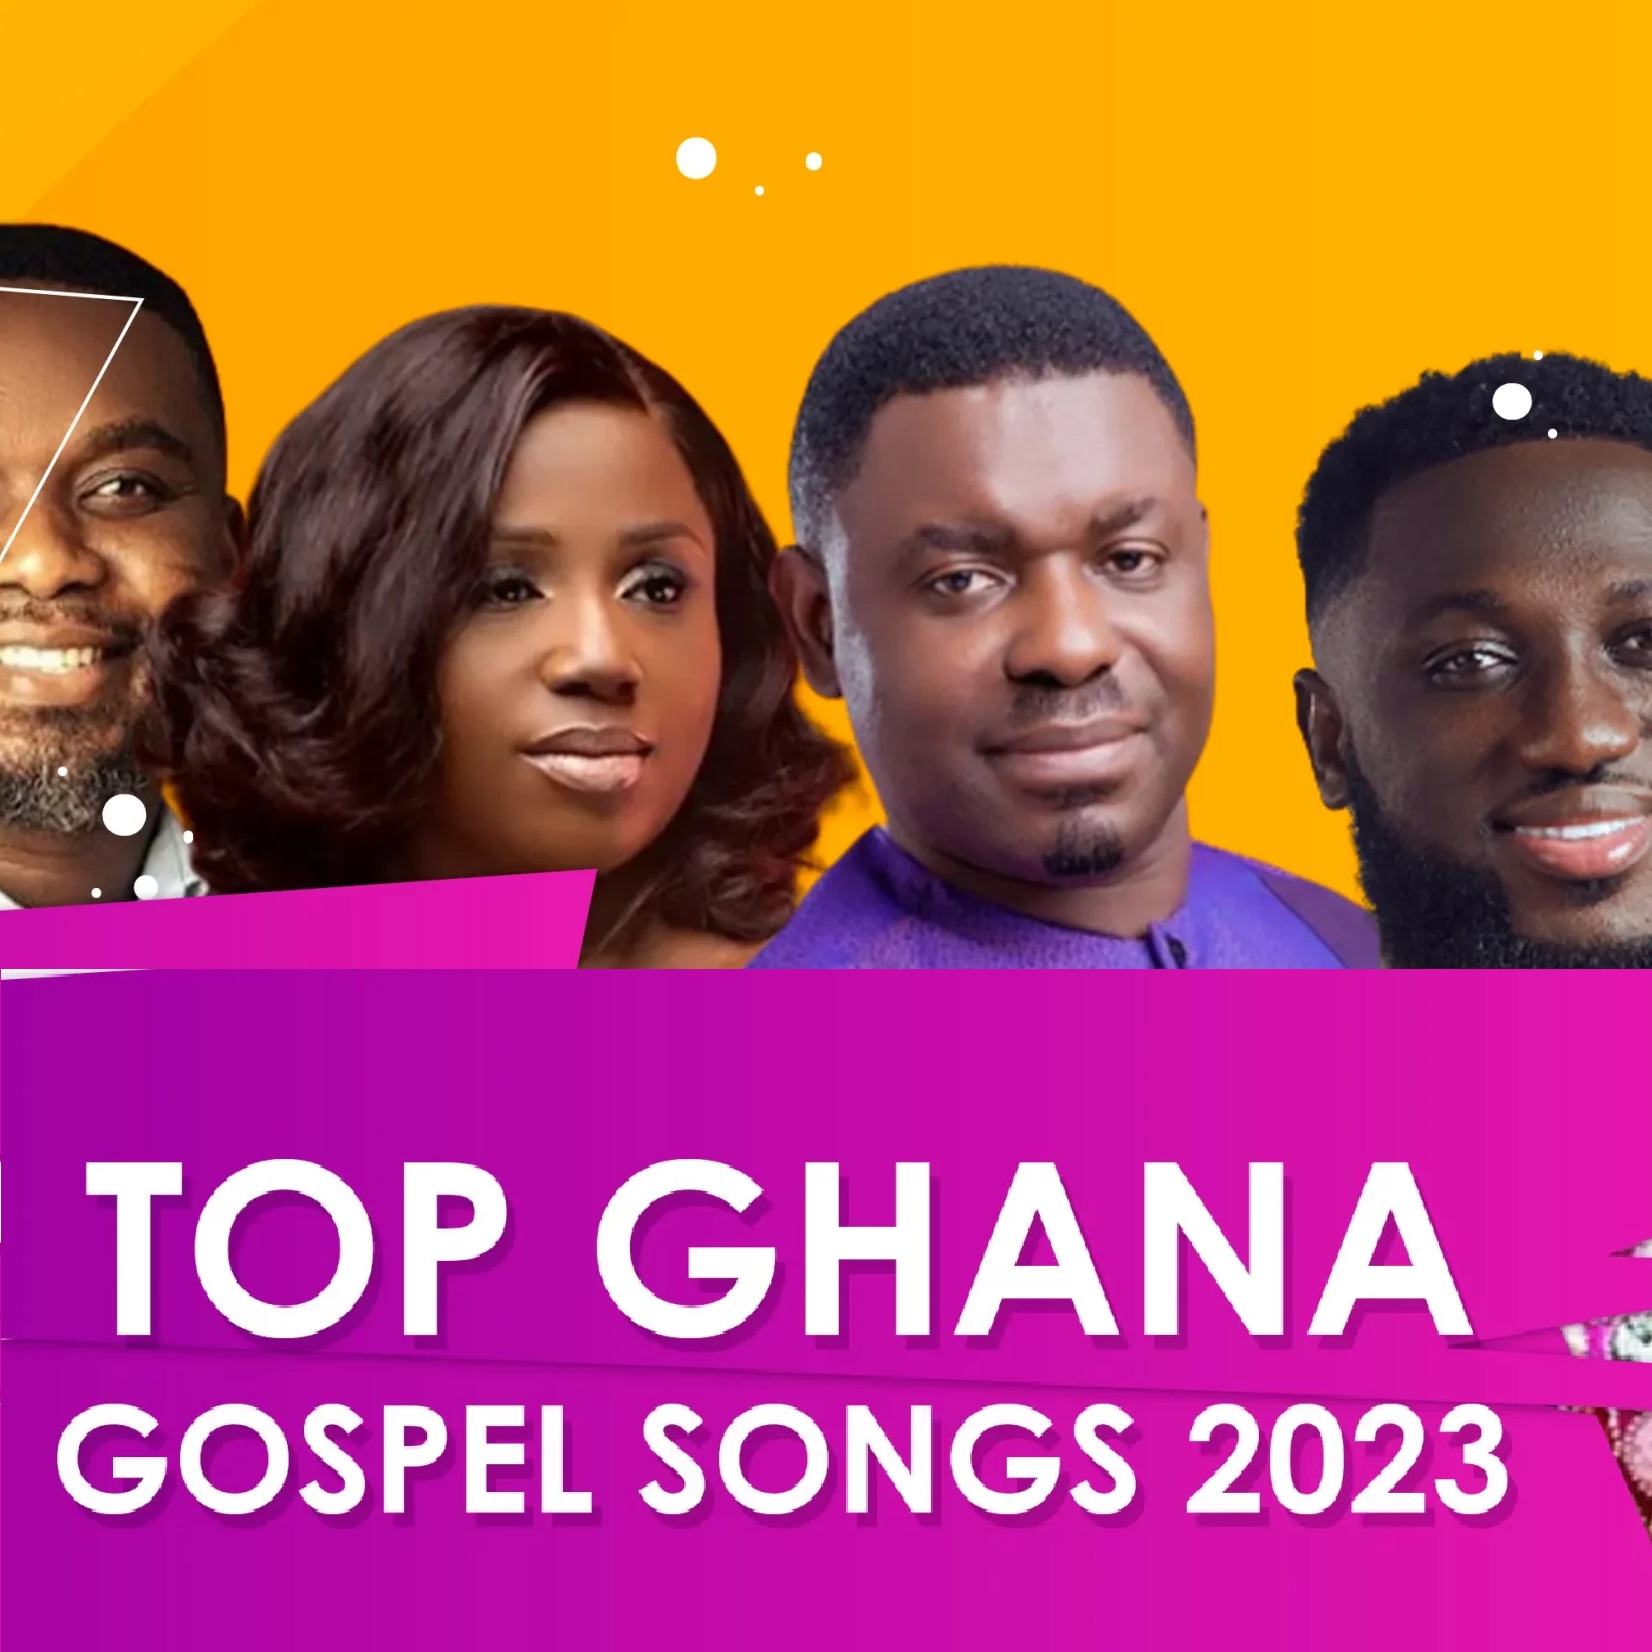 Top Ghana Gospel Songs 2023